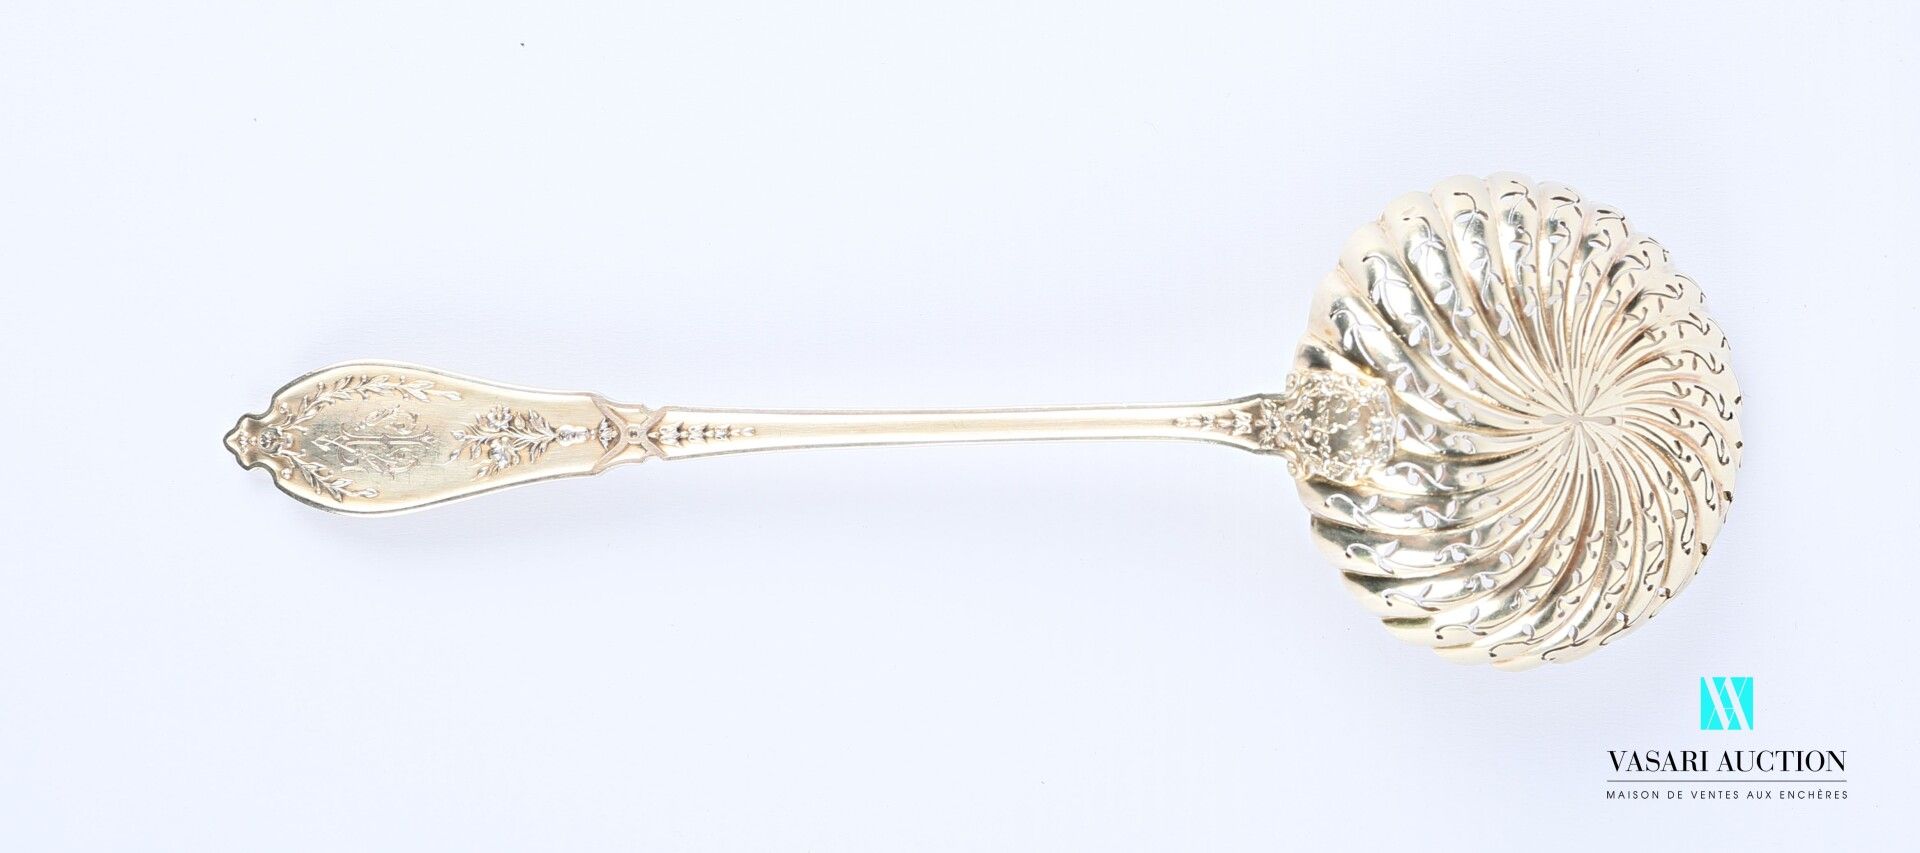 Null 银质洒水勺，柄部装饰有鱼片、花枝、月桂树枝和蝴蝶结，穿孔的勺子上装饰有风格化的叶子。

重量 : 65,09 g